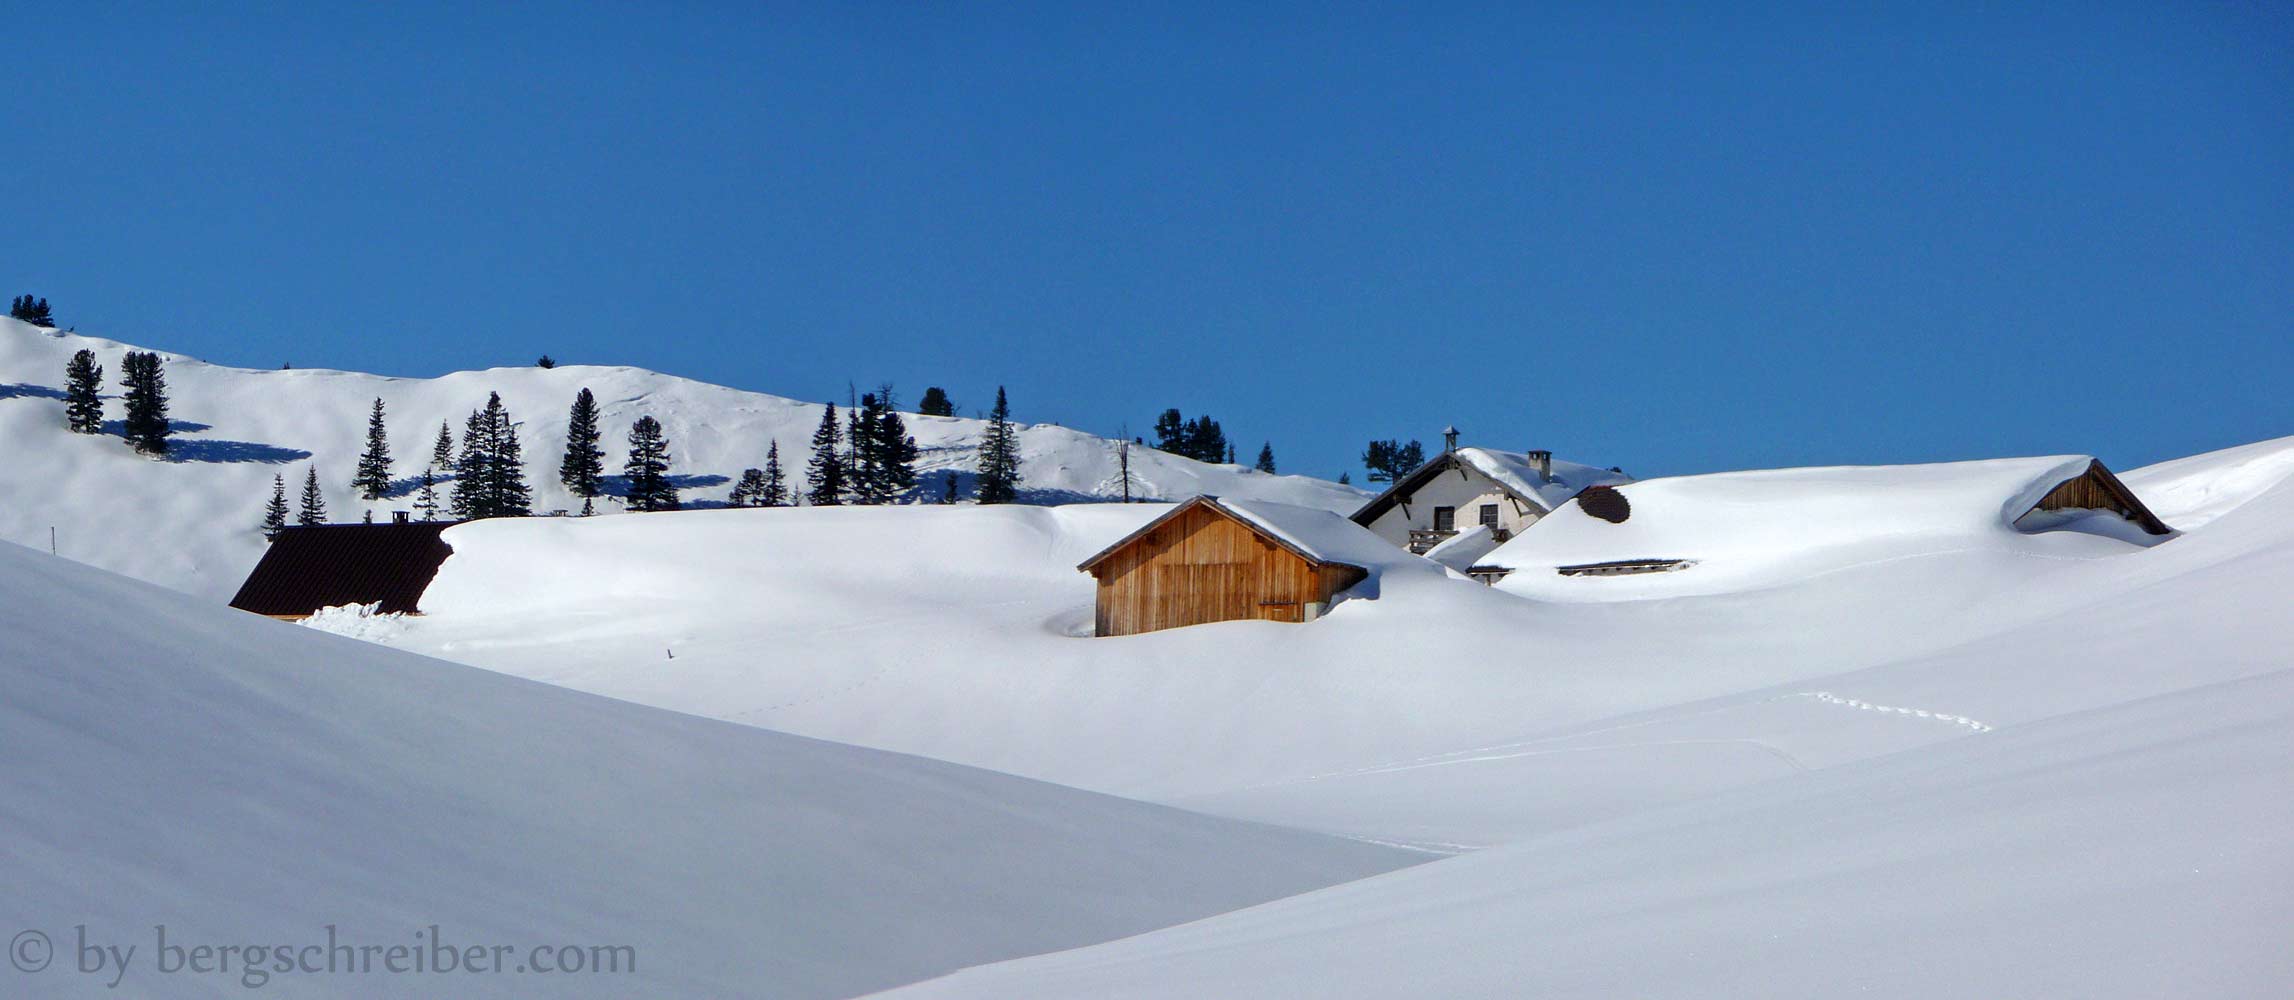 Raaz-Alpe im Winter 2012, der schneereichste Winter seit 50 Jahren